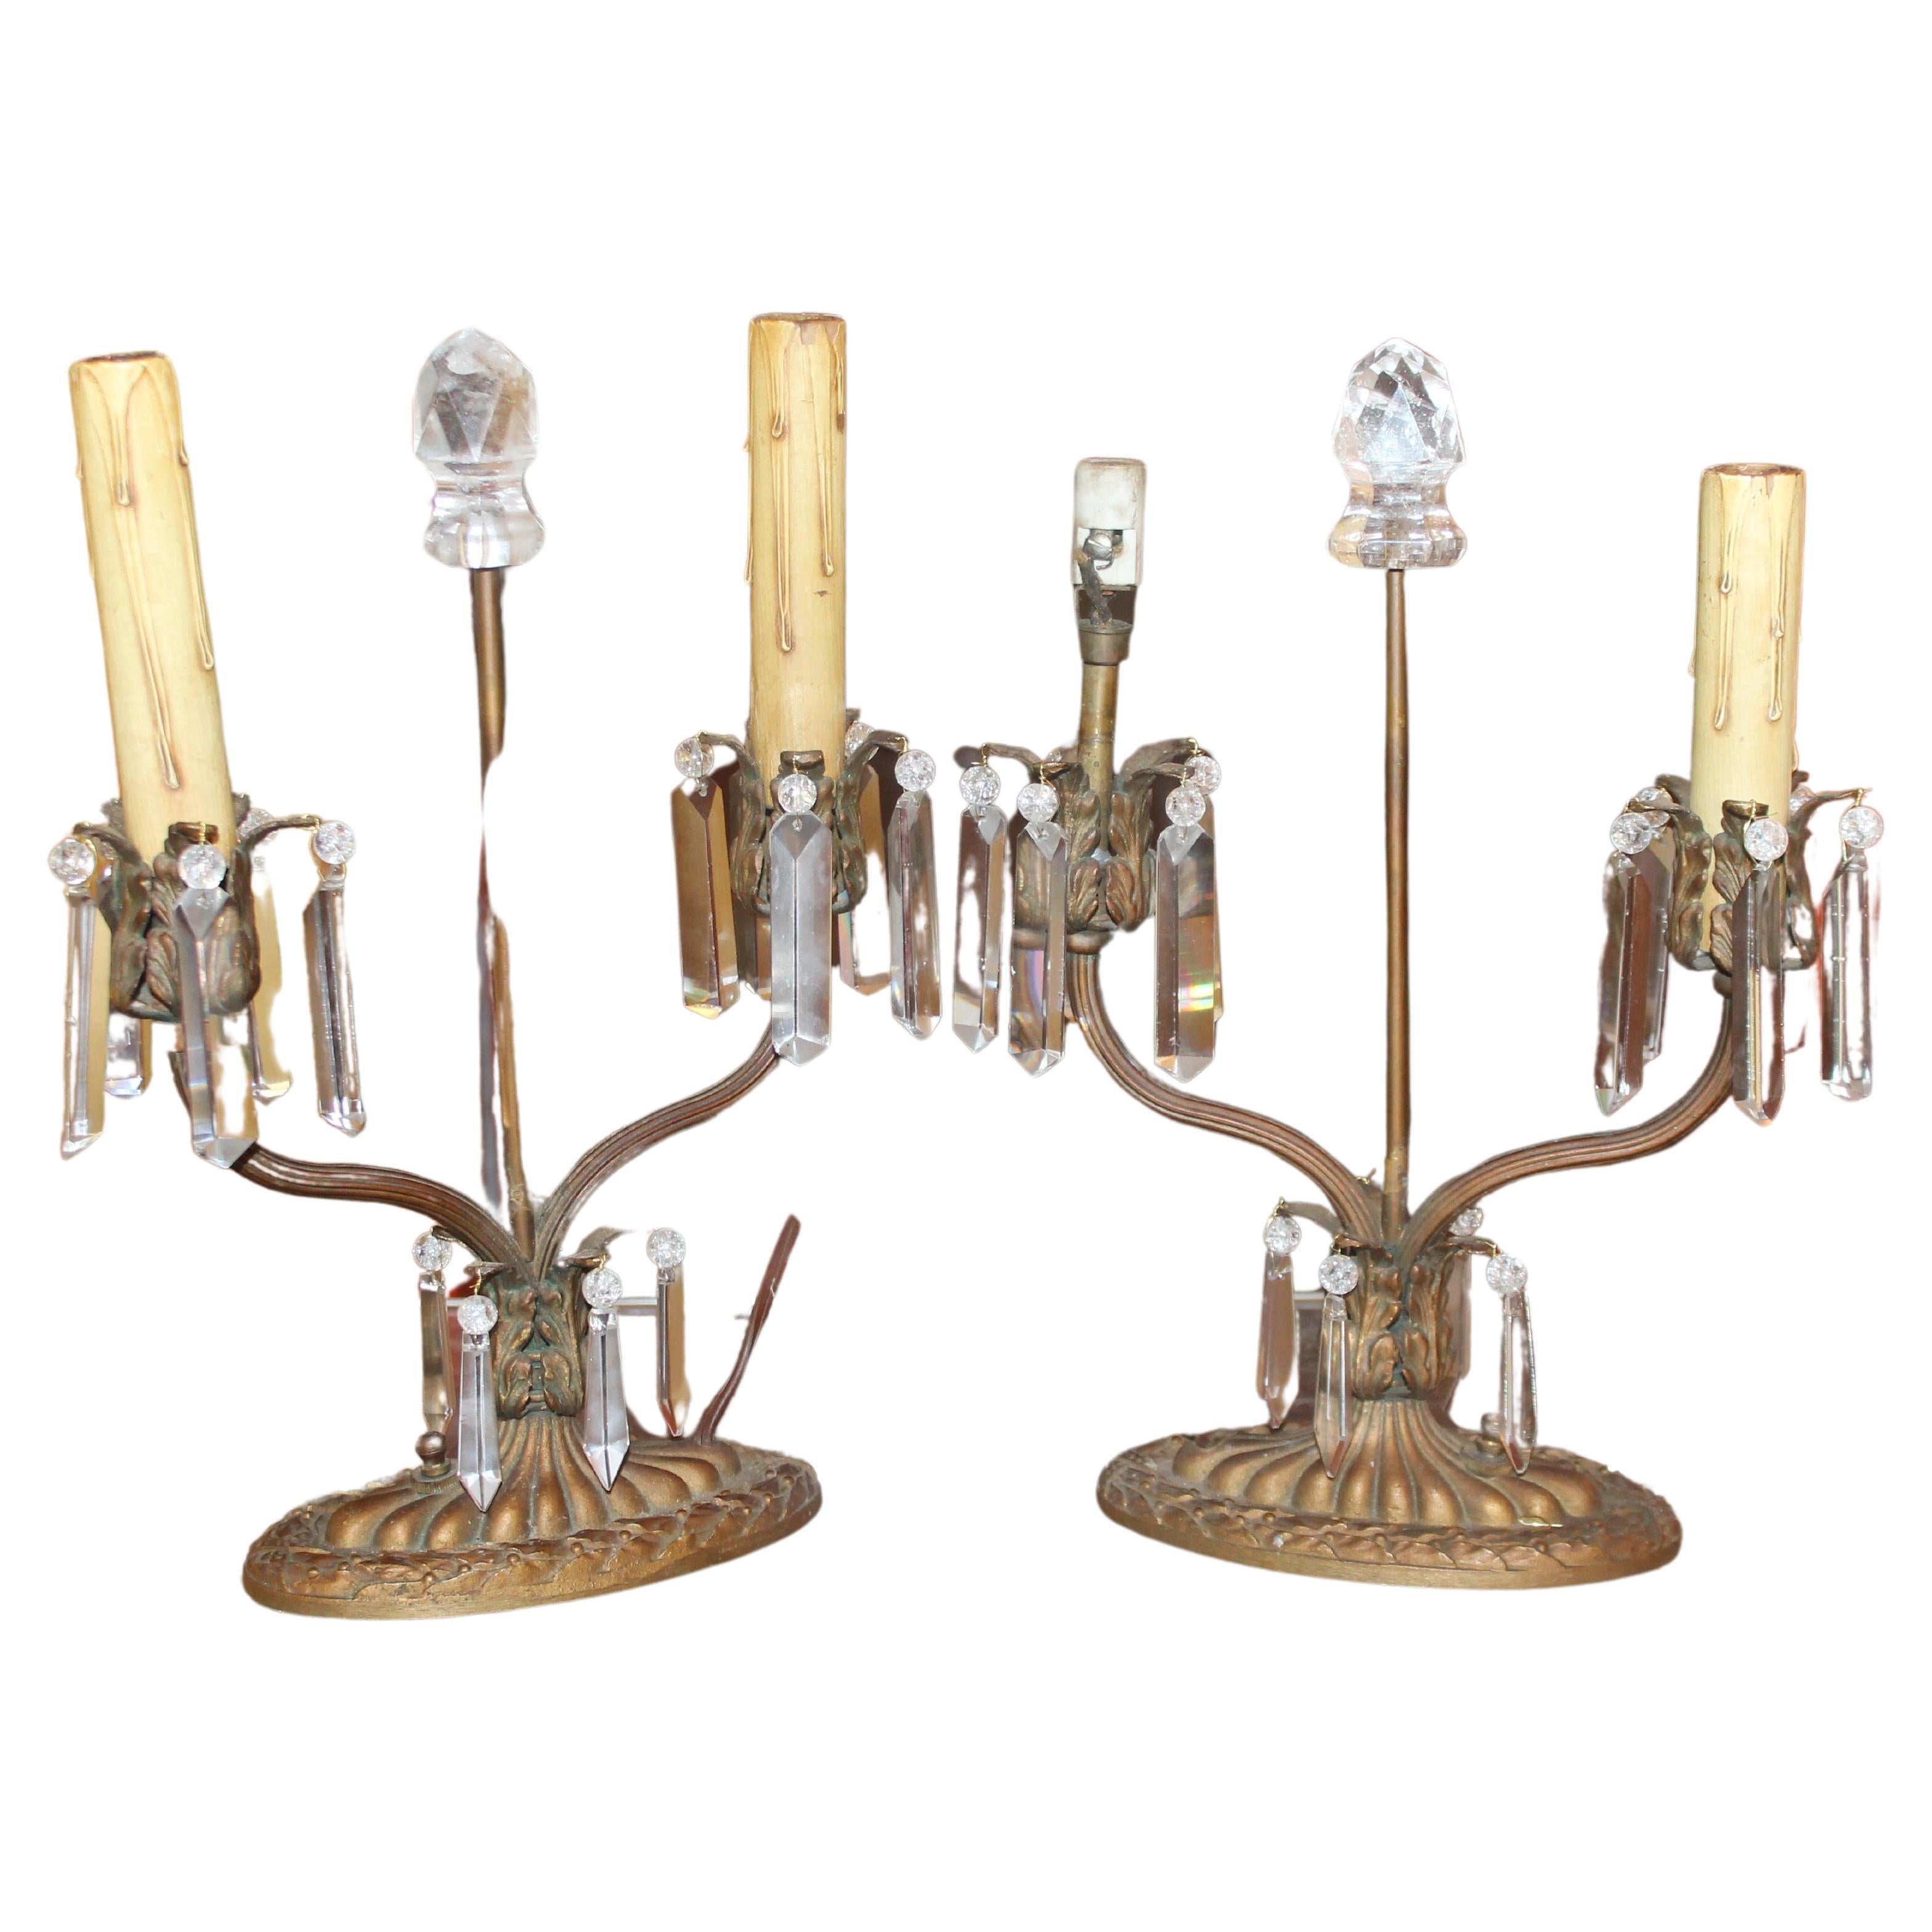 Superbe et inhabituelle paire de girandoles/ lampes de table. Bronze avec des éléments en cristal taillé et en cristal de roche. Napoléon III Période 1890. Du cristal de Baccarat a été utilisé.